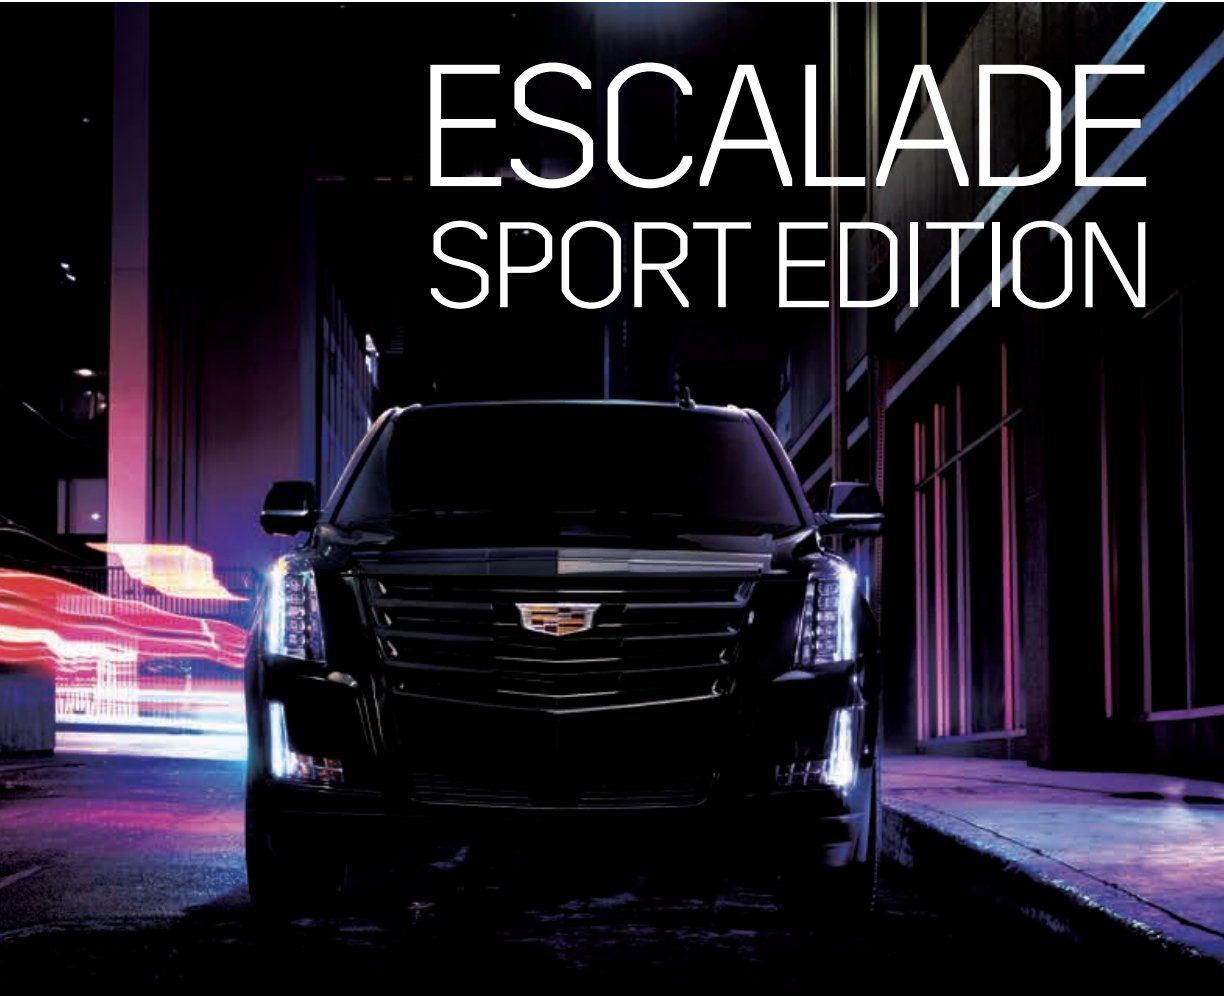 キャデラック Cadillac Jp Al Twitter Cadillac Escalade Sport Edition 誕生以来絶えず進化を続け 世界の高級車の基準を更新してきたキャデラック エスカレードの特別な一台 インテリアは黒で統一され スタイリッシュかつ上質な空間を実現 T Co